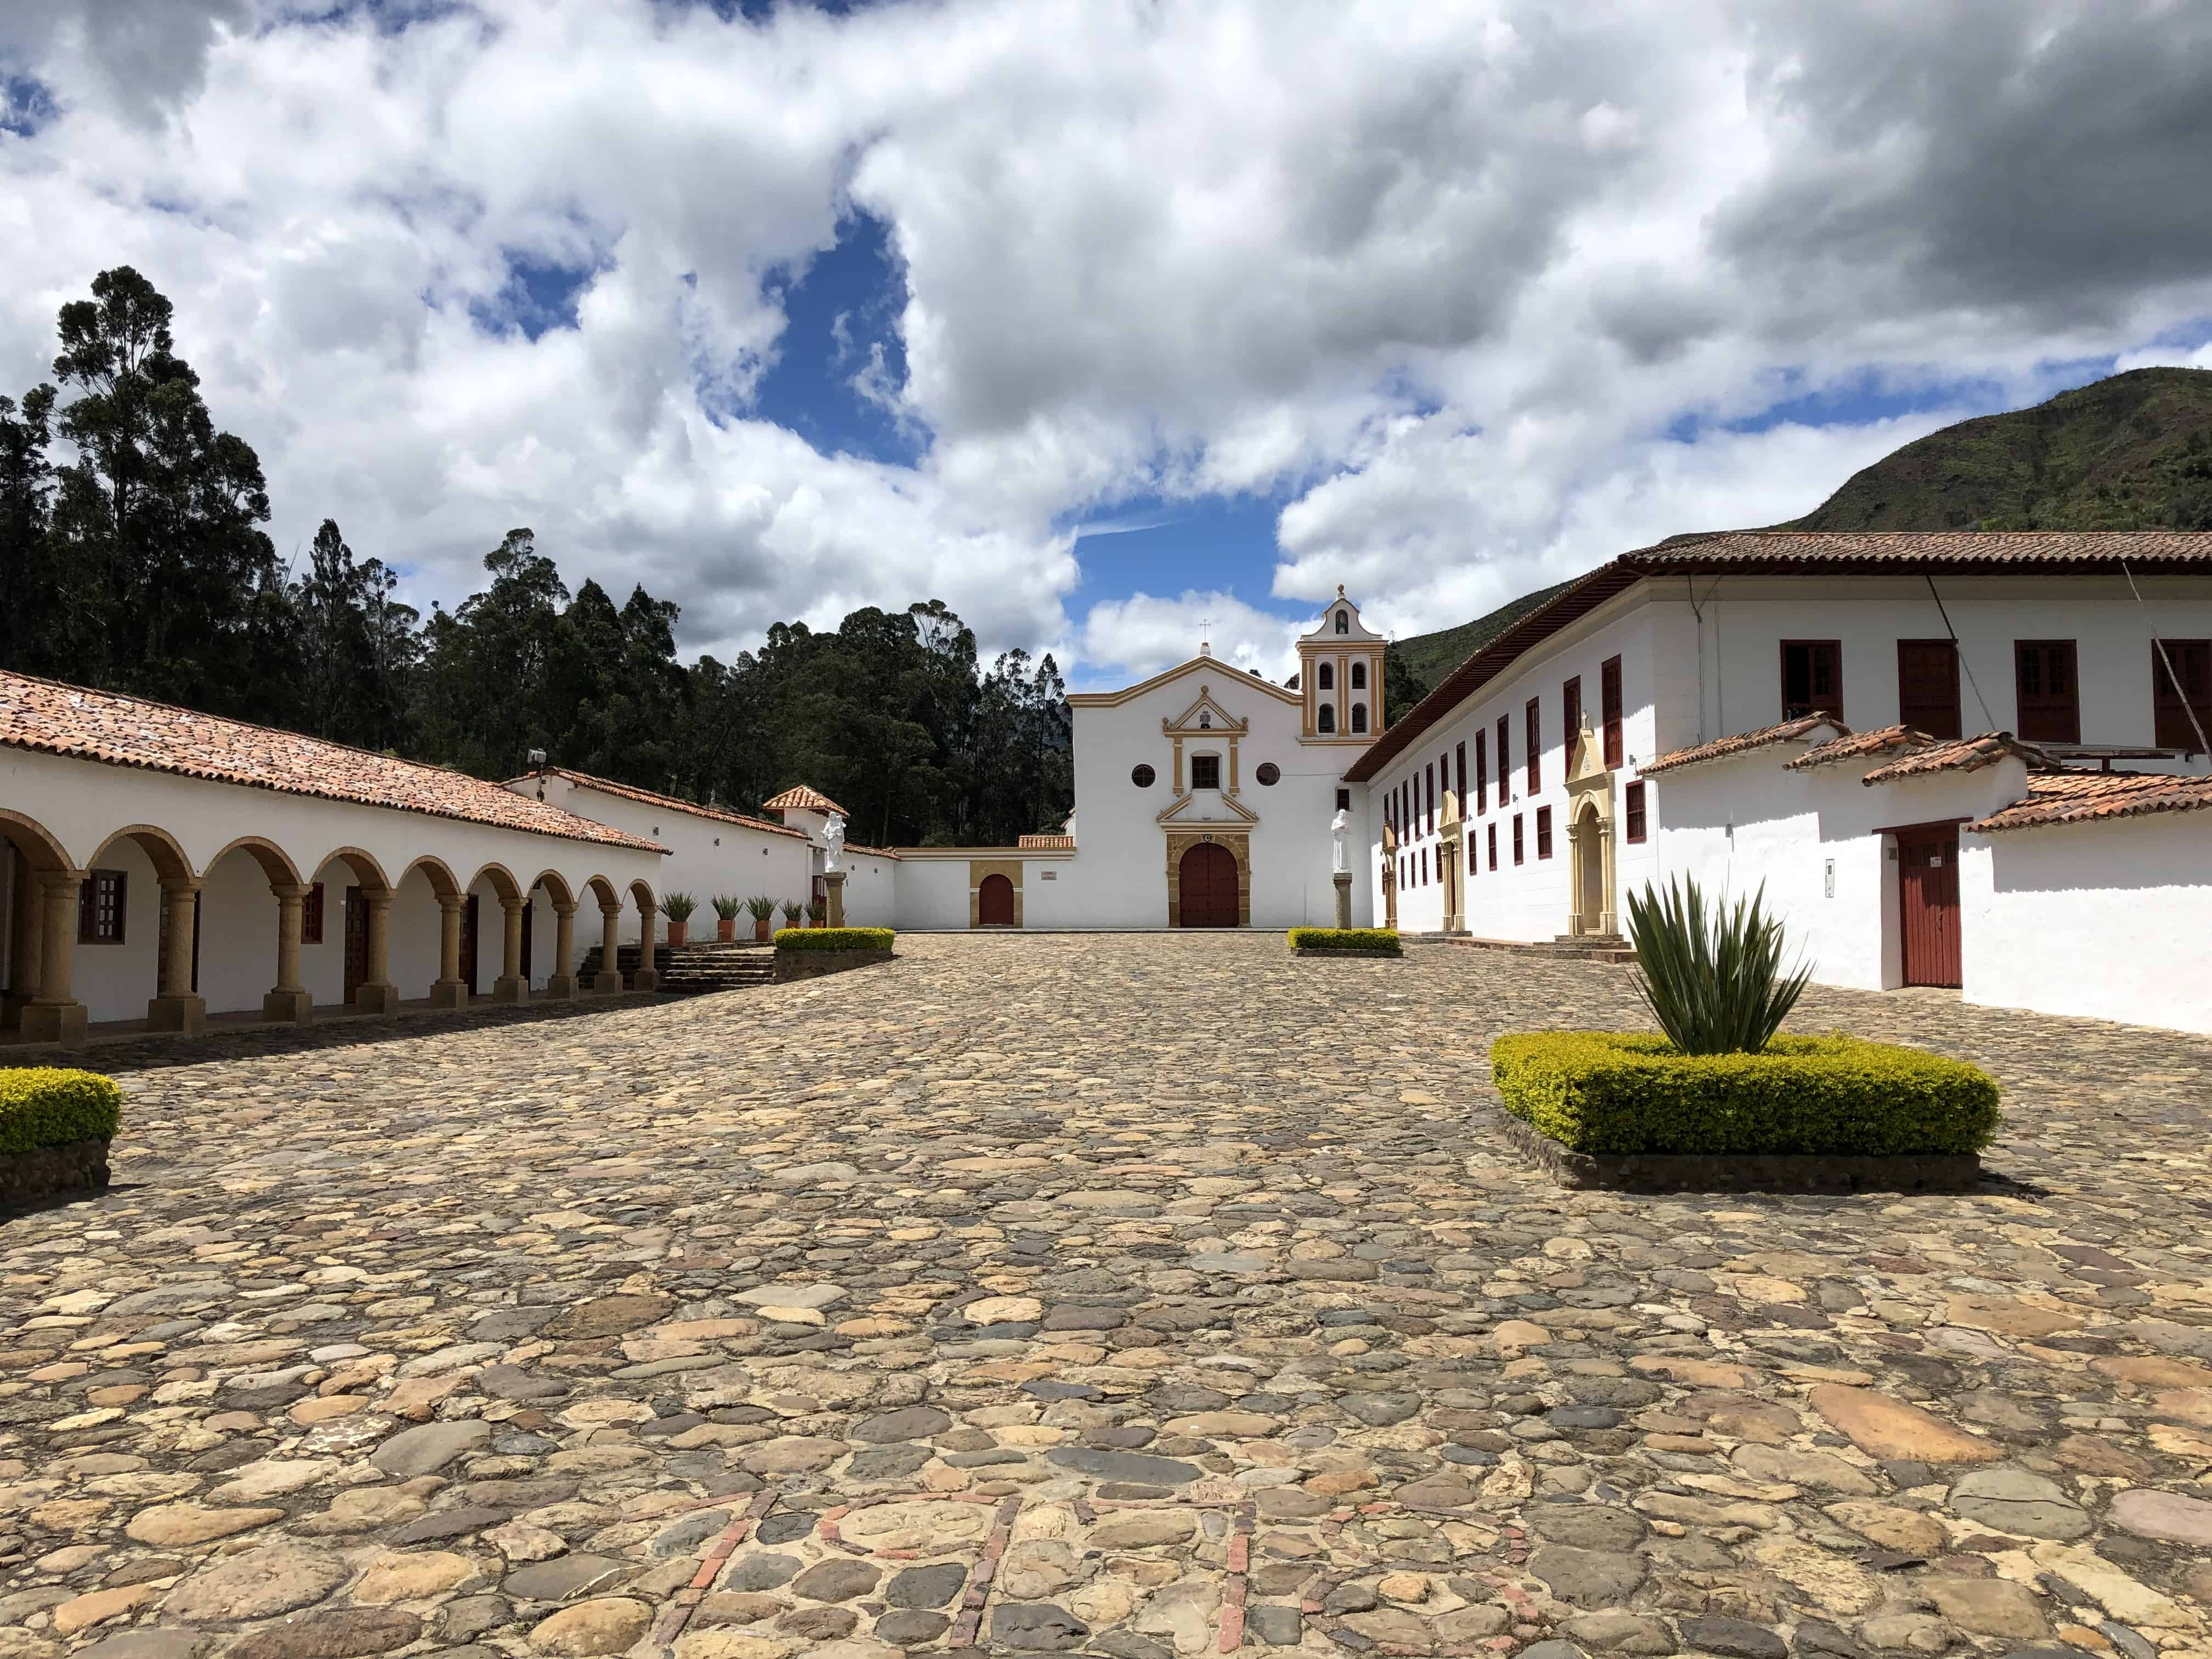 La Candelaria Monastery